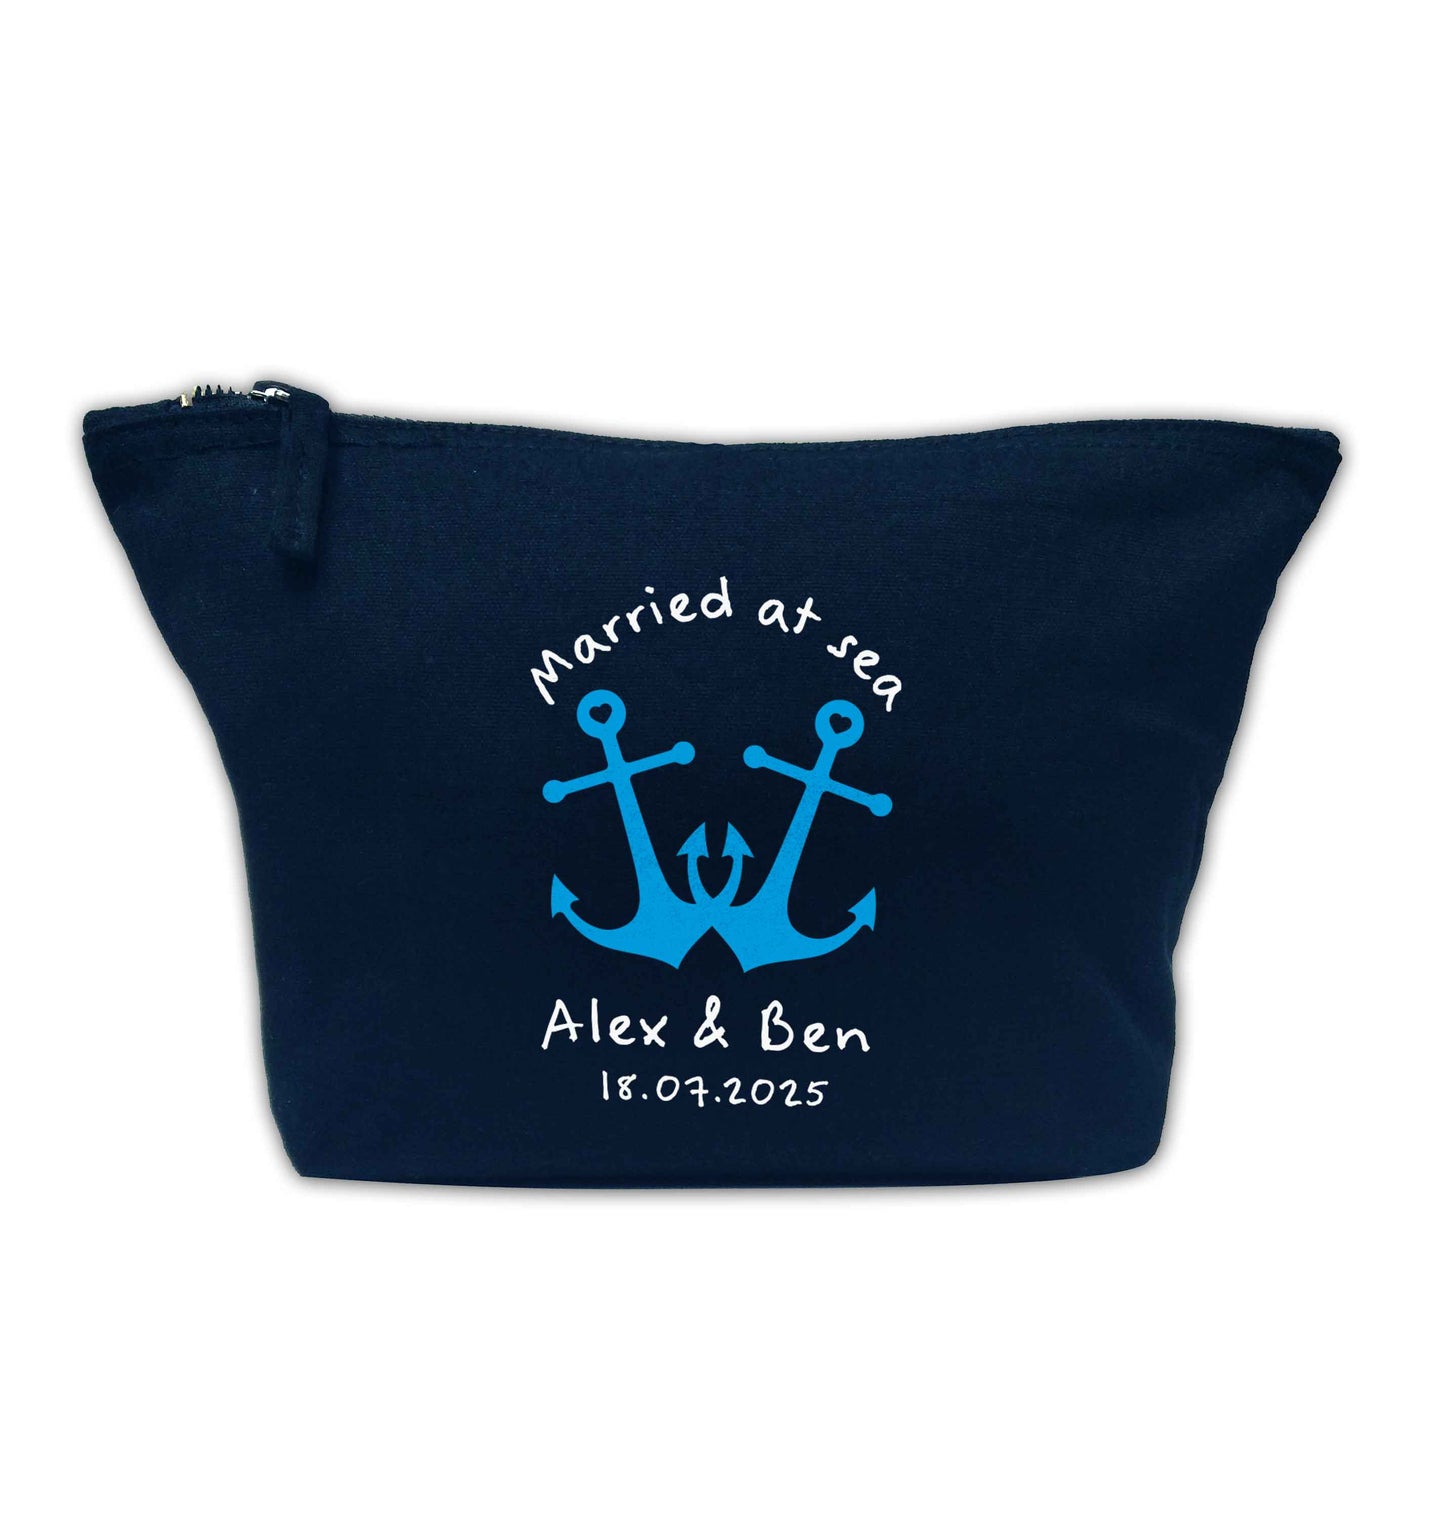 Married at sea blue anchors navy makeup bag